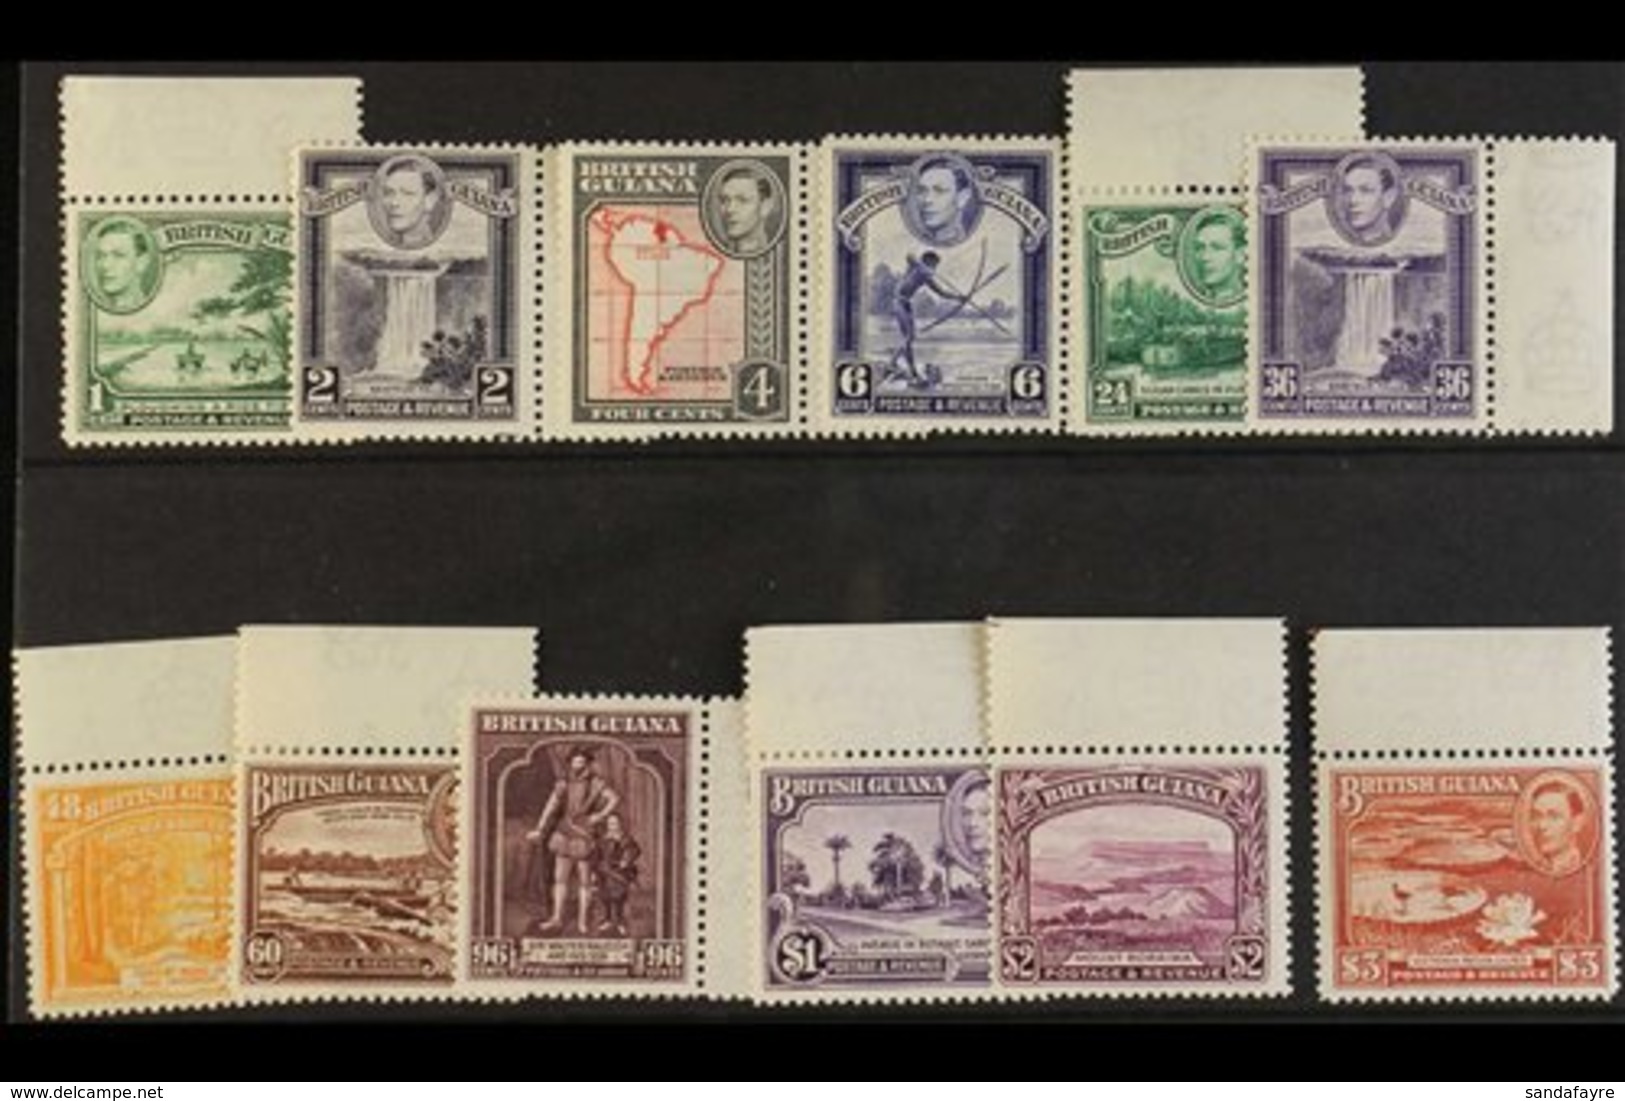 1938-52 Pictorial Definitive Set, SG 308a/19, Never Hinge Mint Marginals Set (12 Stamps) For More Images, Please Visit H - British Guiana (...-1966)